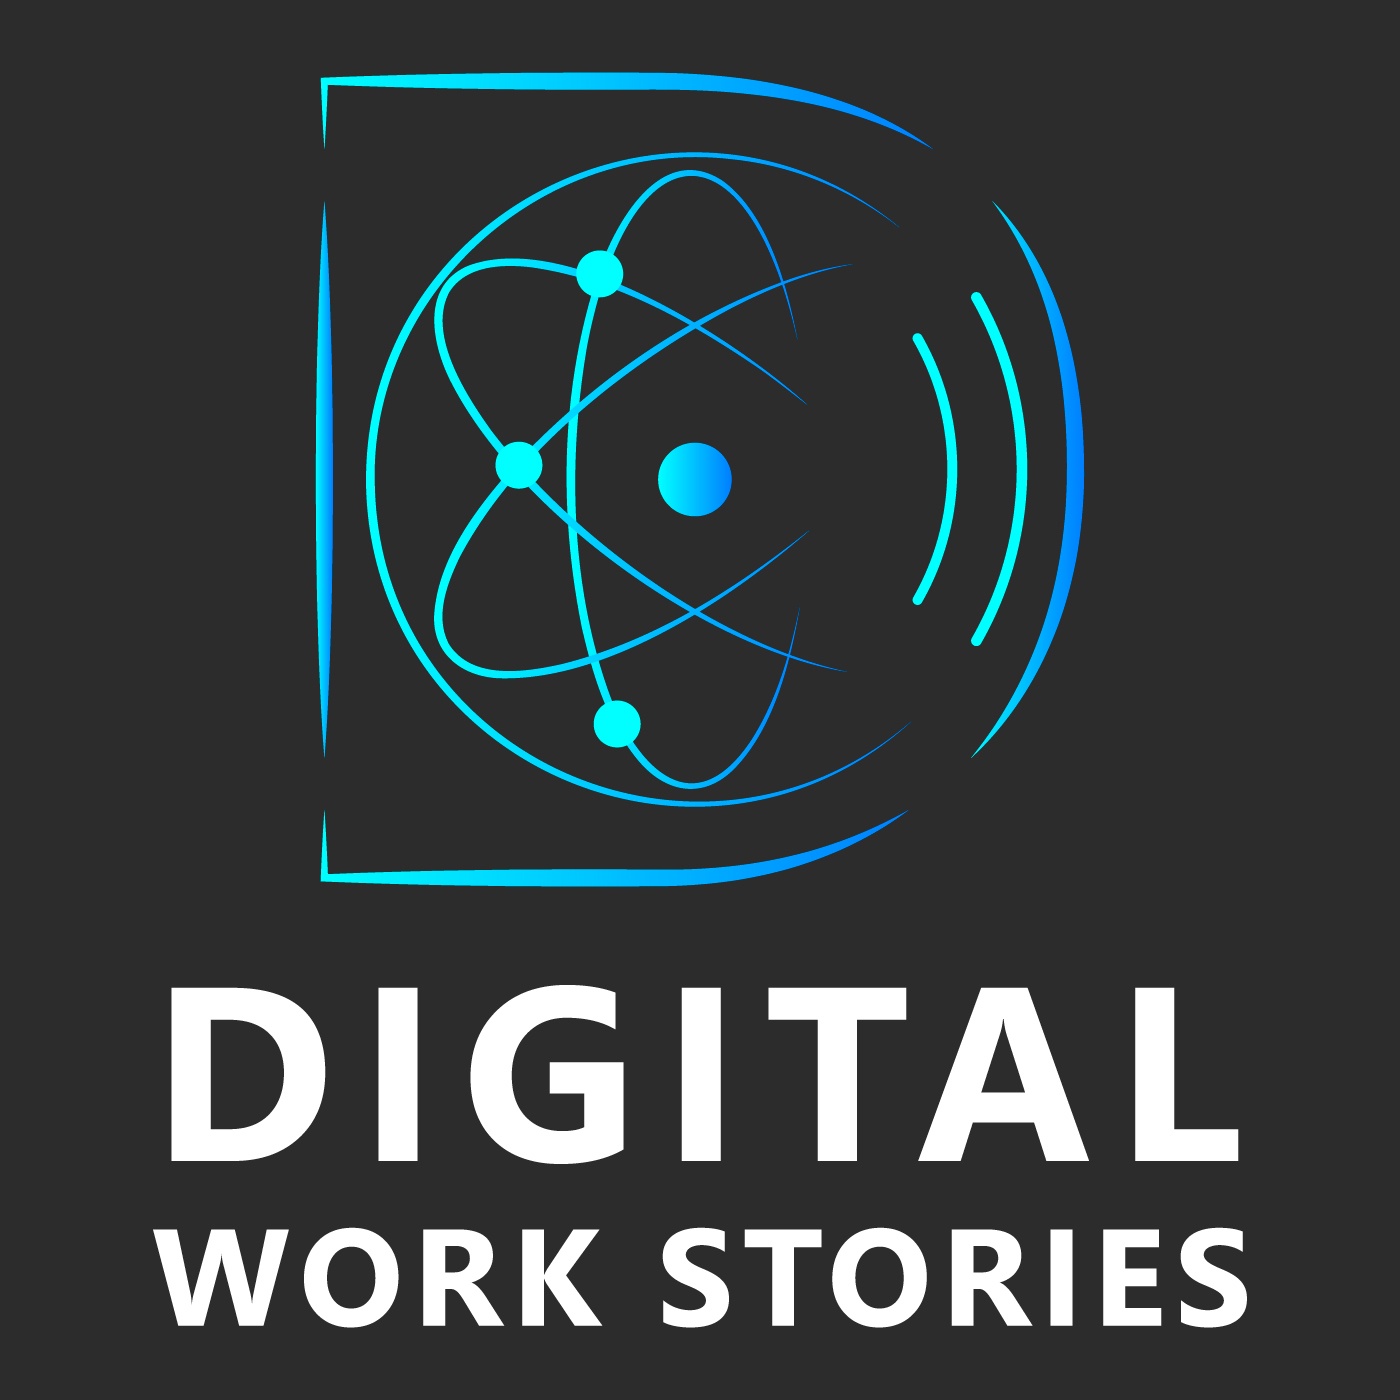 DIGITAL WORK STORIES